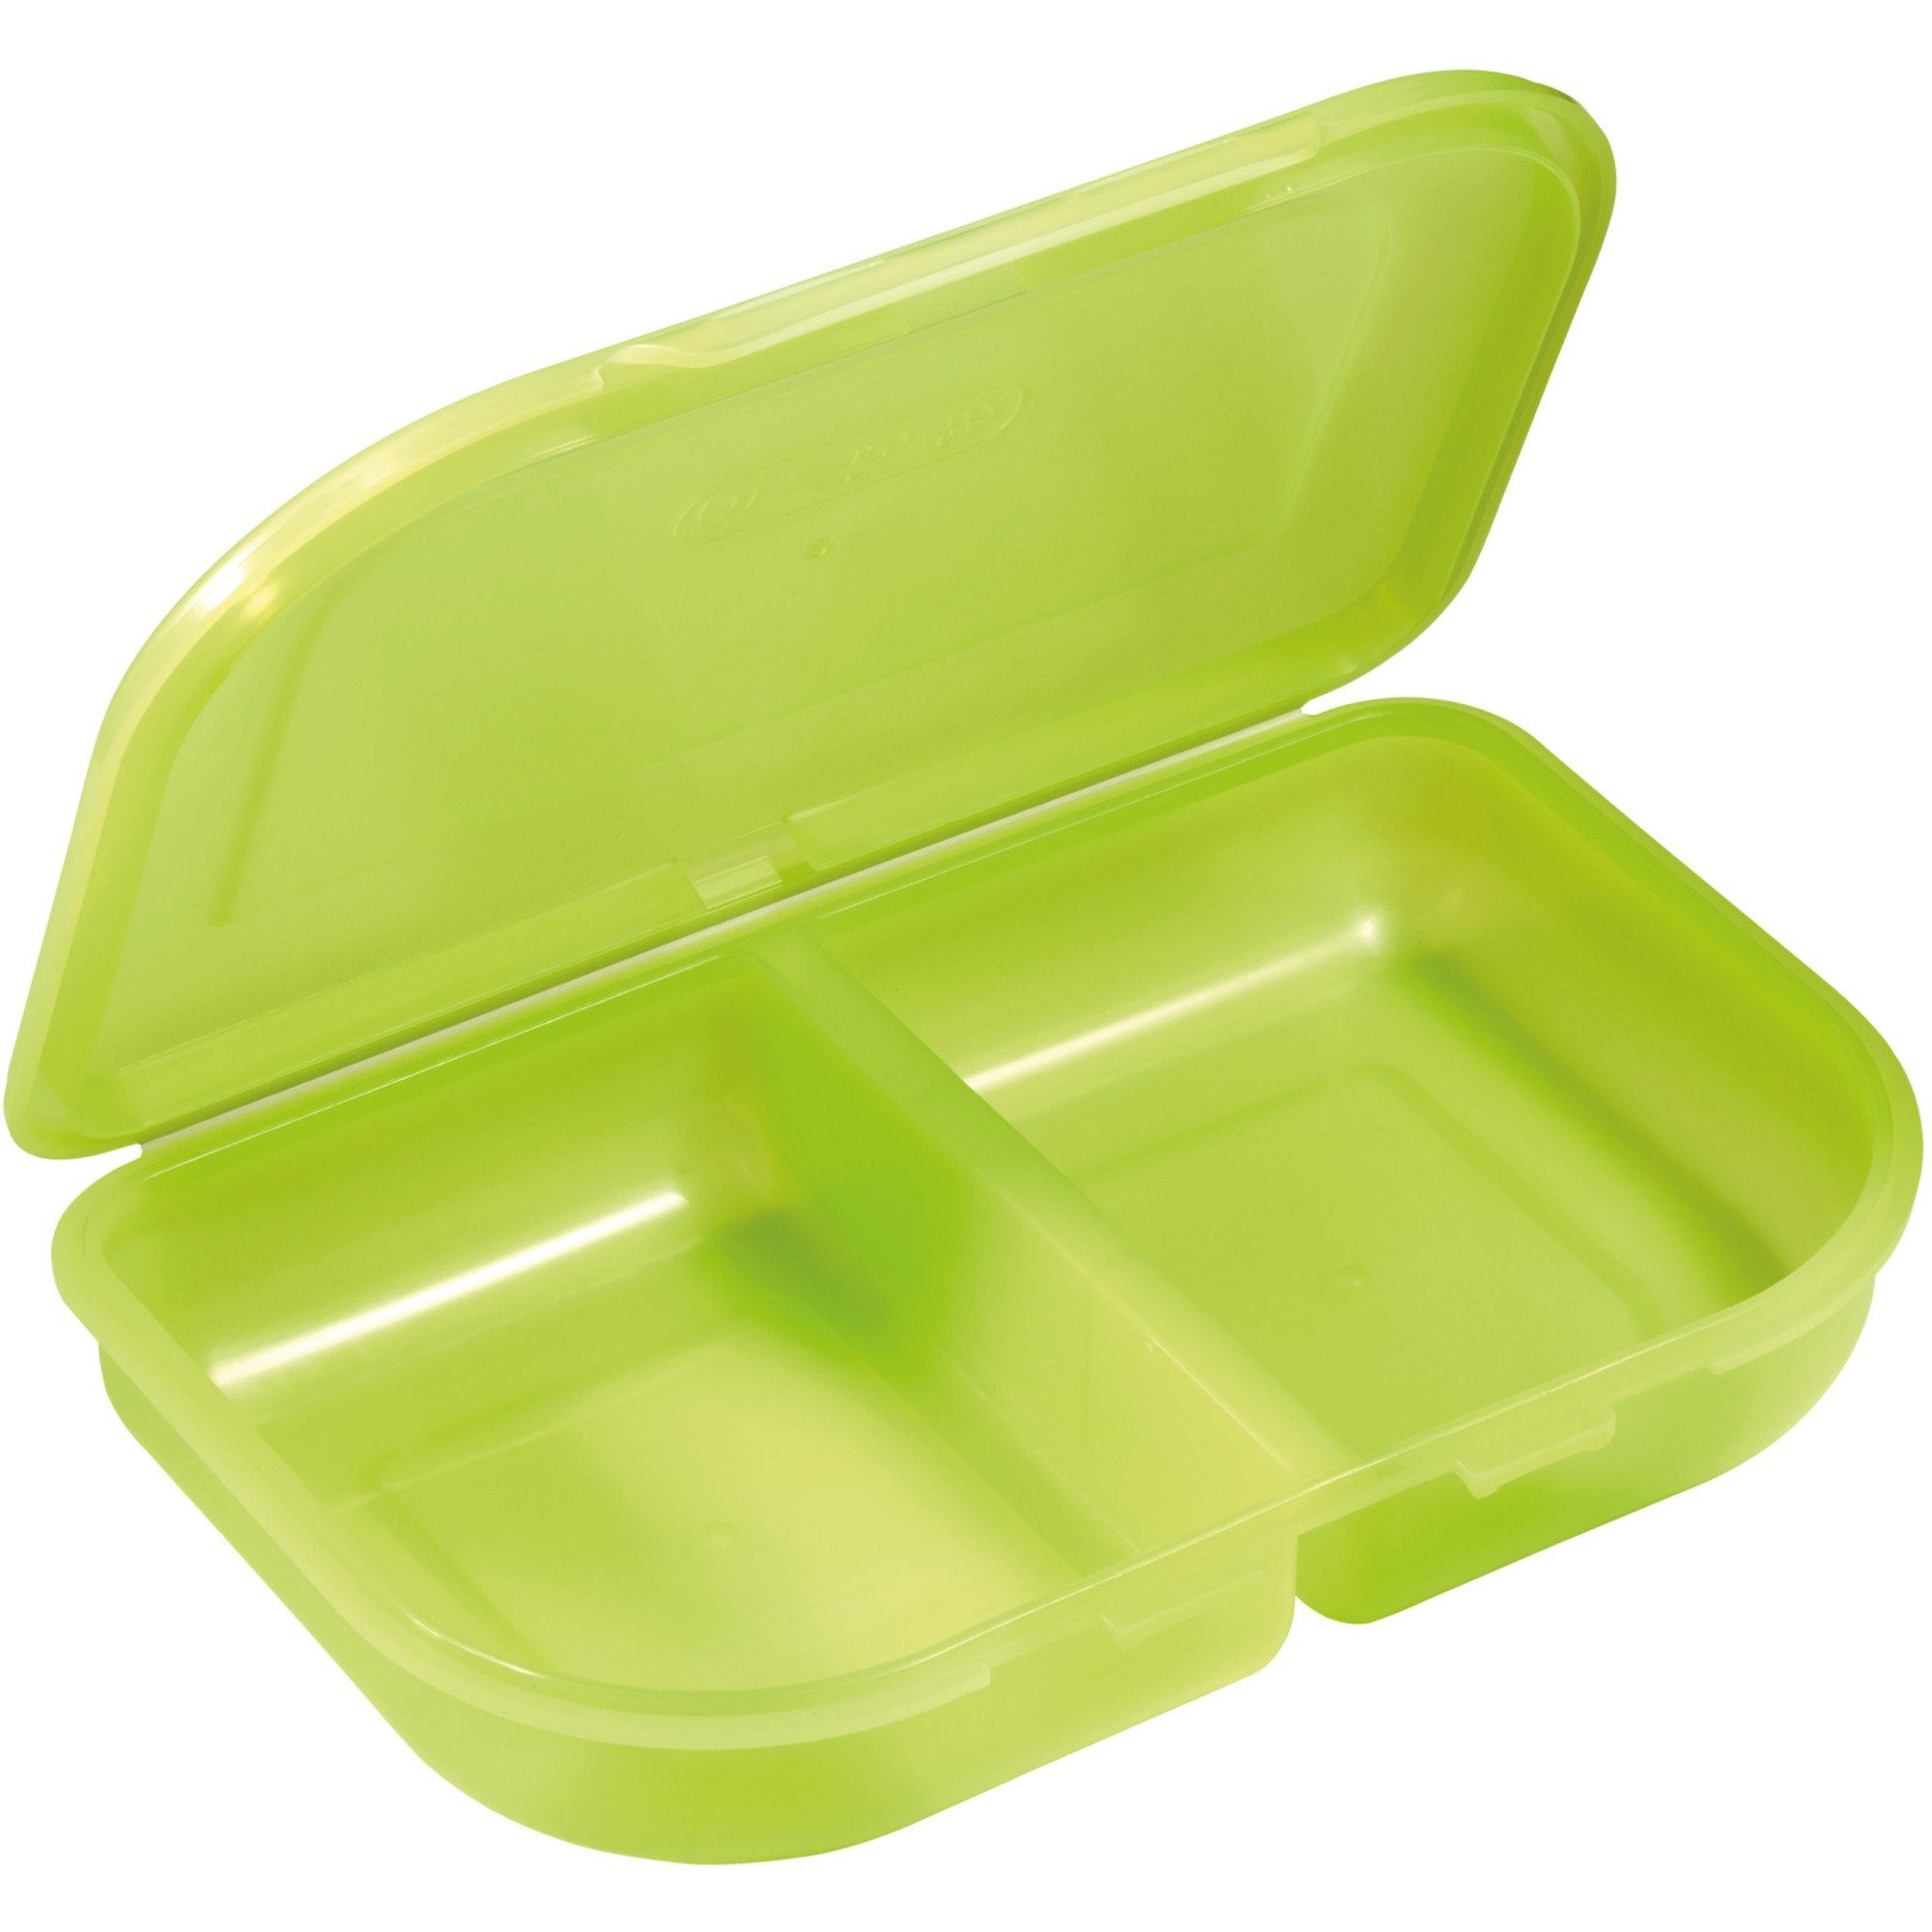 Herlitz Geschirr-Set Herlitz (mit Pushverschluss) Lunch-Box, Brotdose